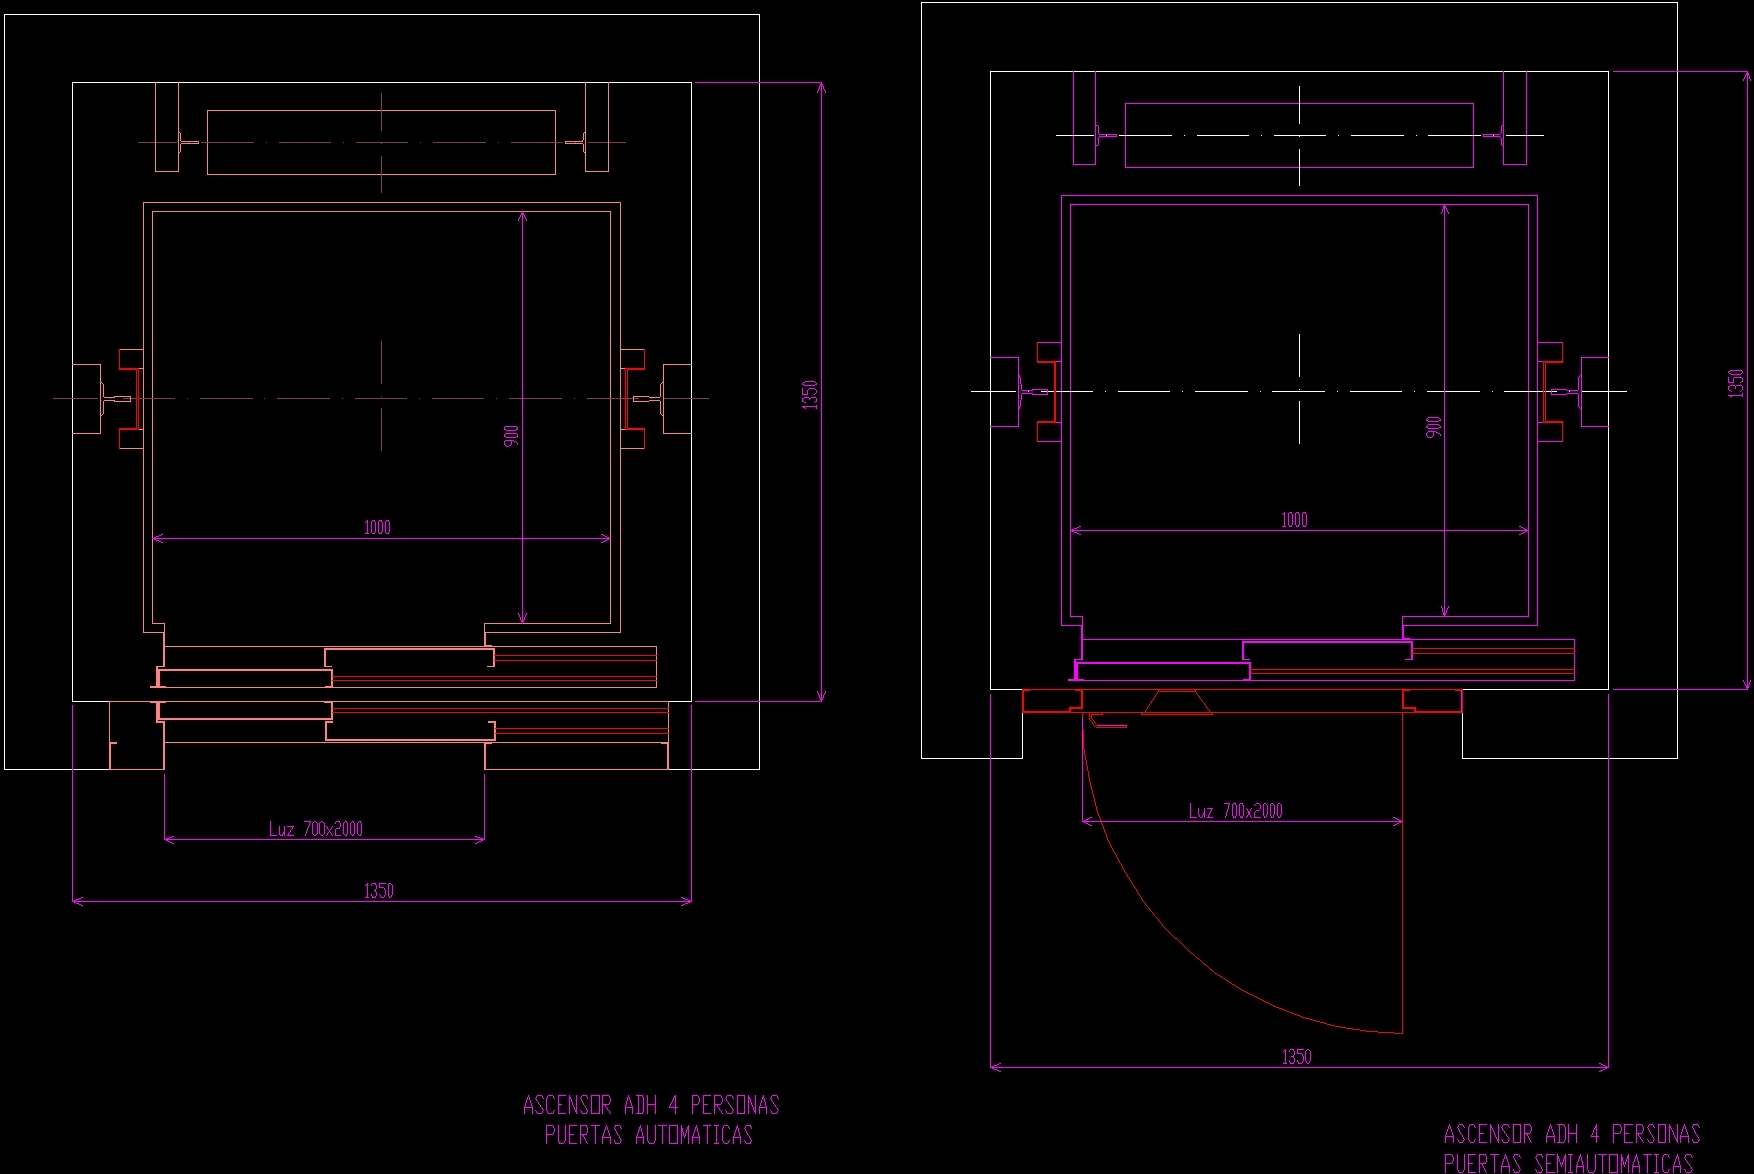  Elevators  DWG Block  for AutoCAD   Designs CAD